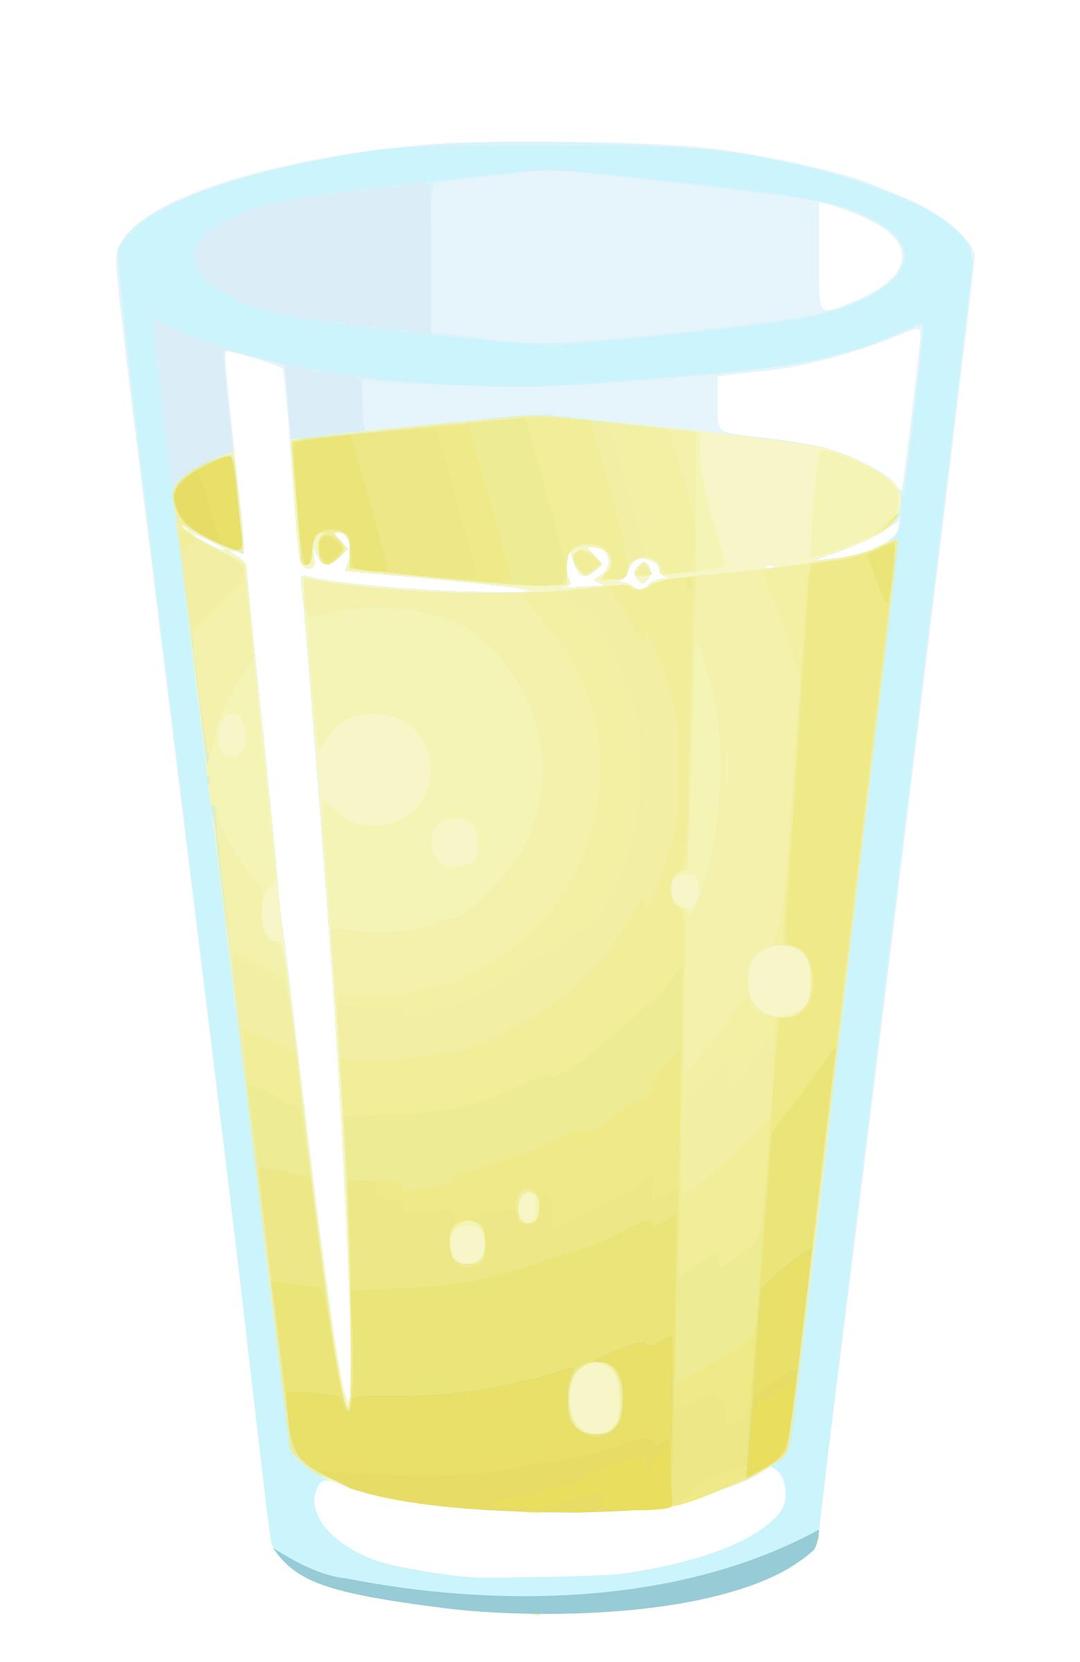 Lemon-juice-glitch png transparent